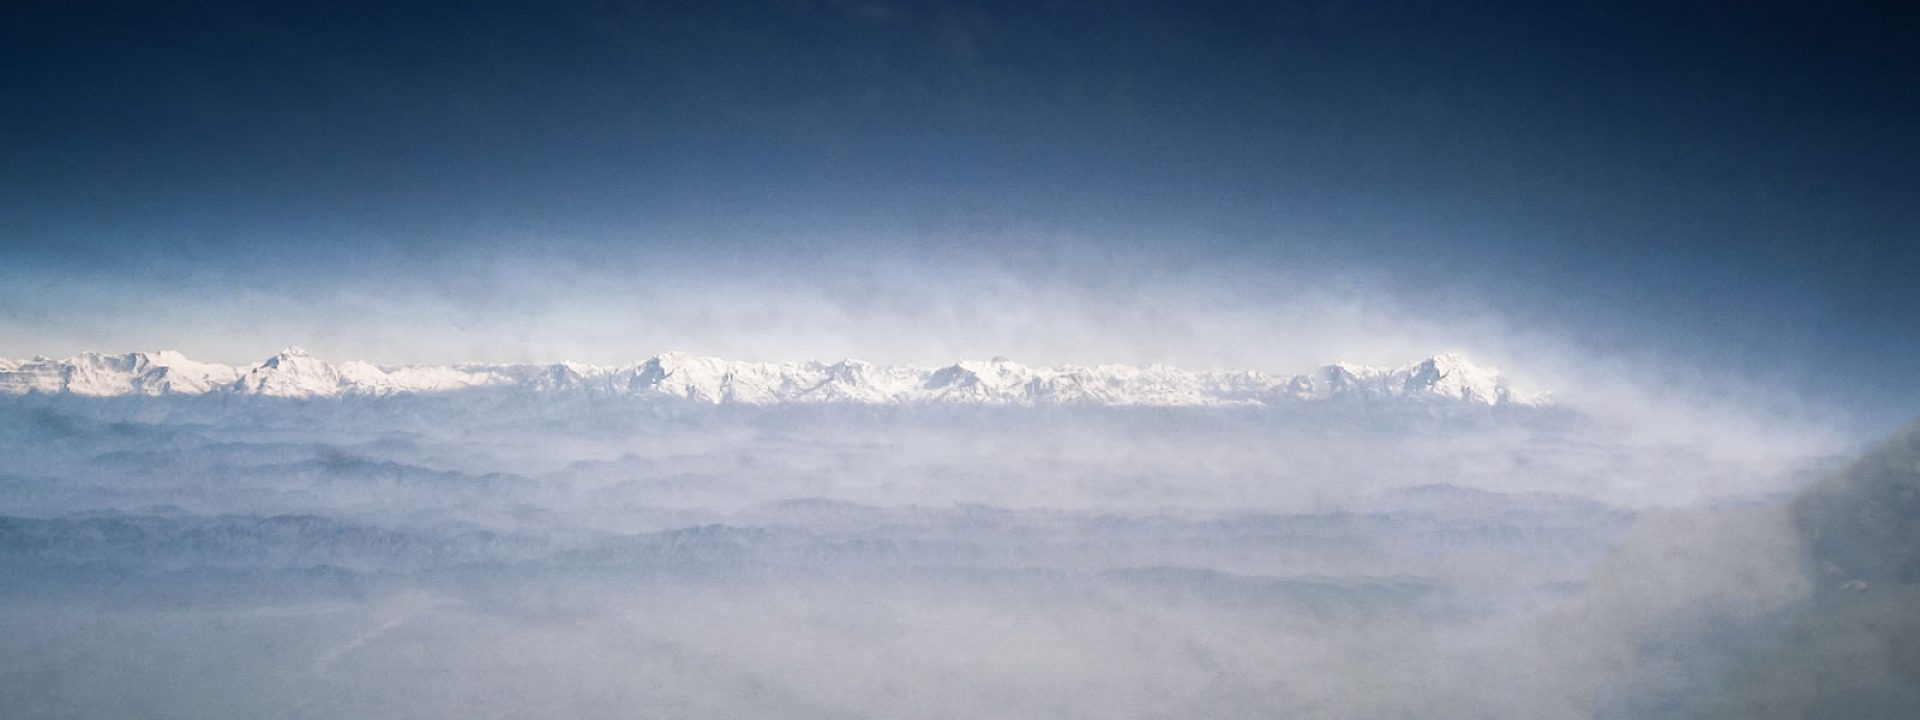 El hielo del Himalaya no está lejos